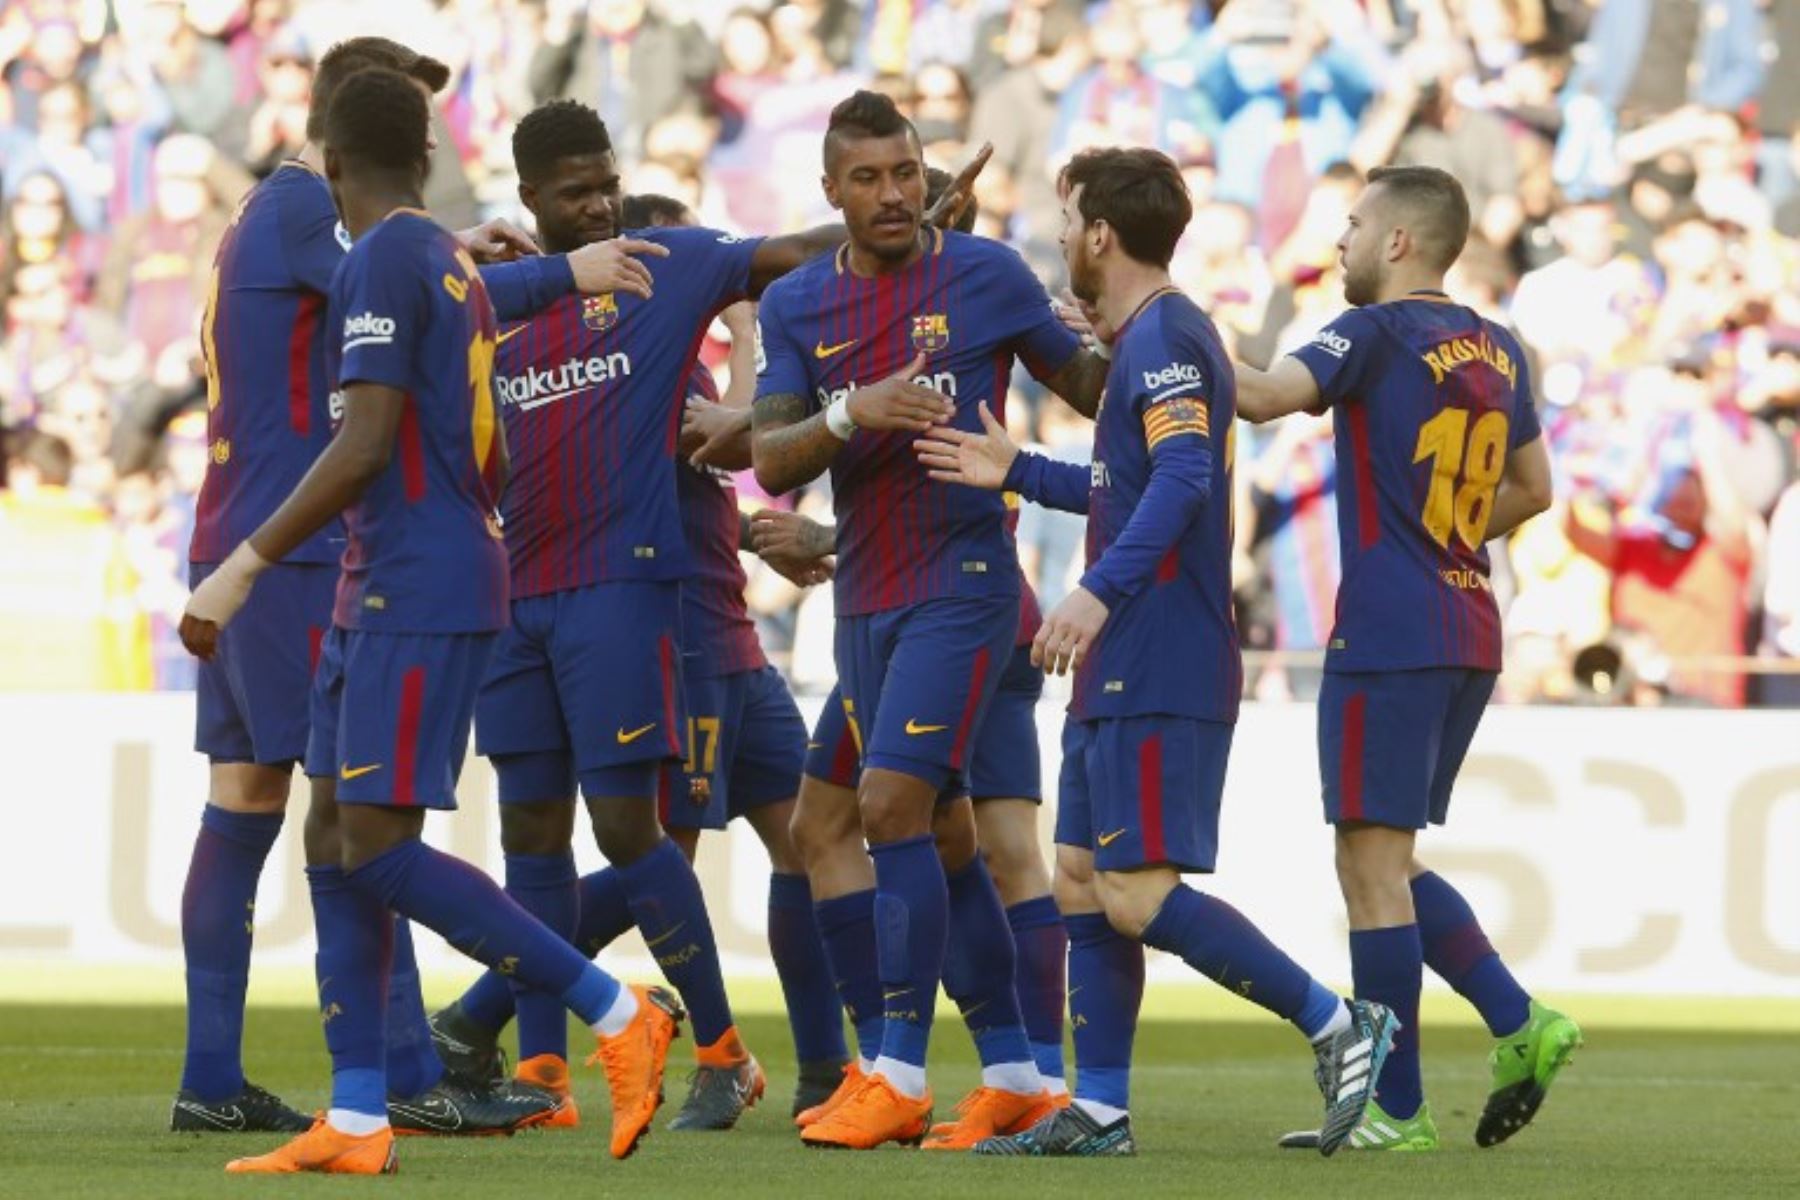 Los jugadores del Barcelona celebran el gol del delantero español Paco Alcacer, durante el partido de fútbol de la Liga española.Foto:AFP